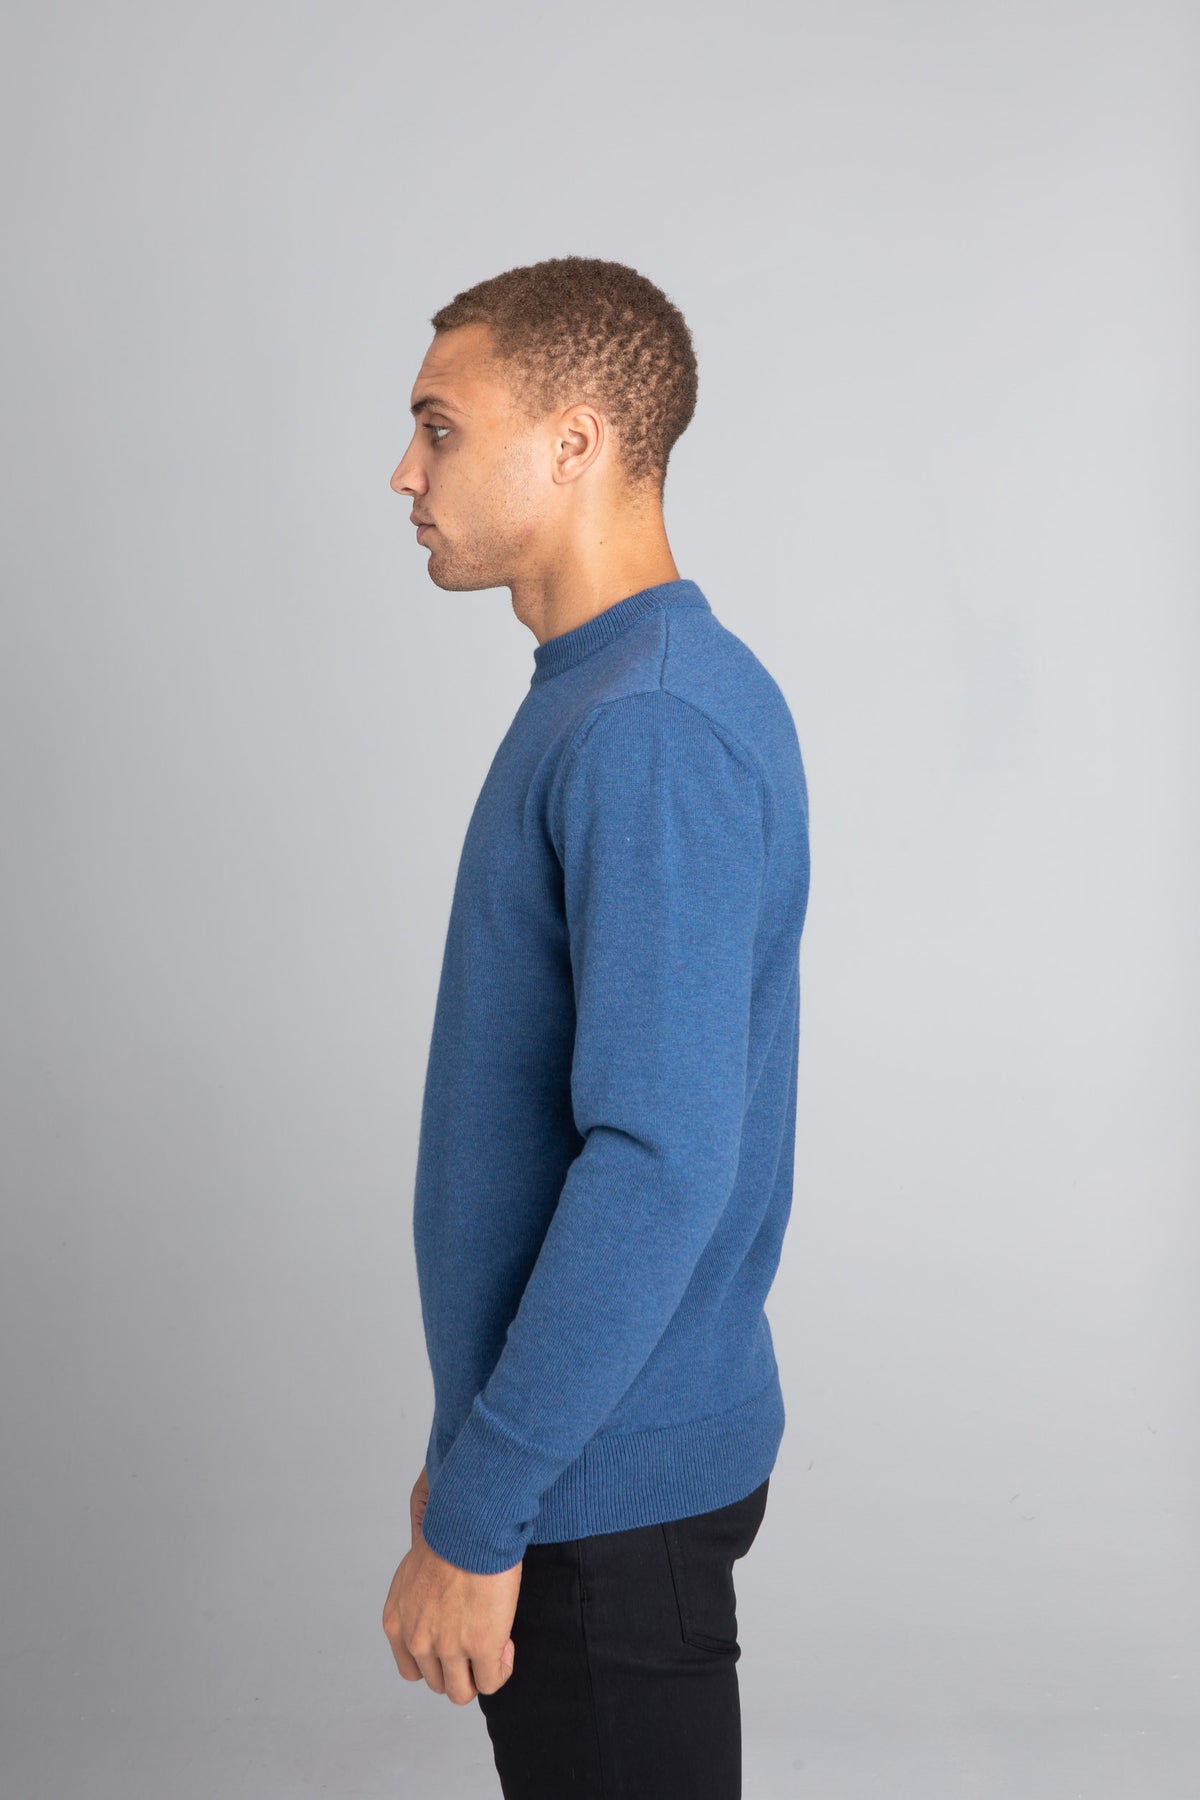 Model wearing The Merino Wool Sweater Sky Blue, left - Unborn